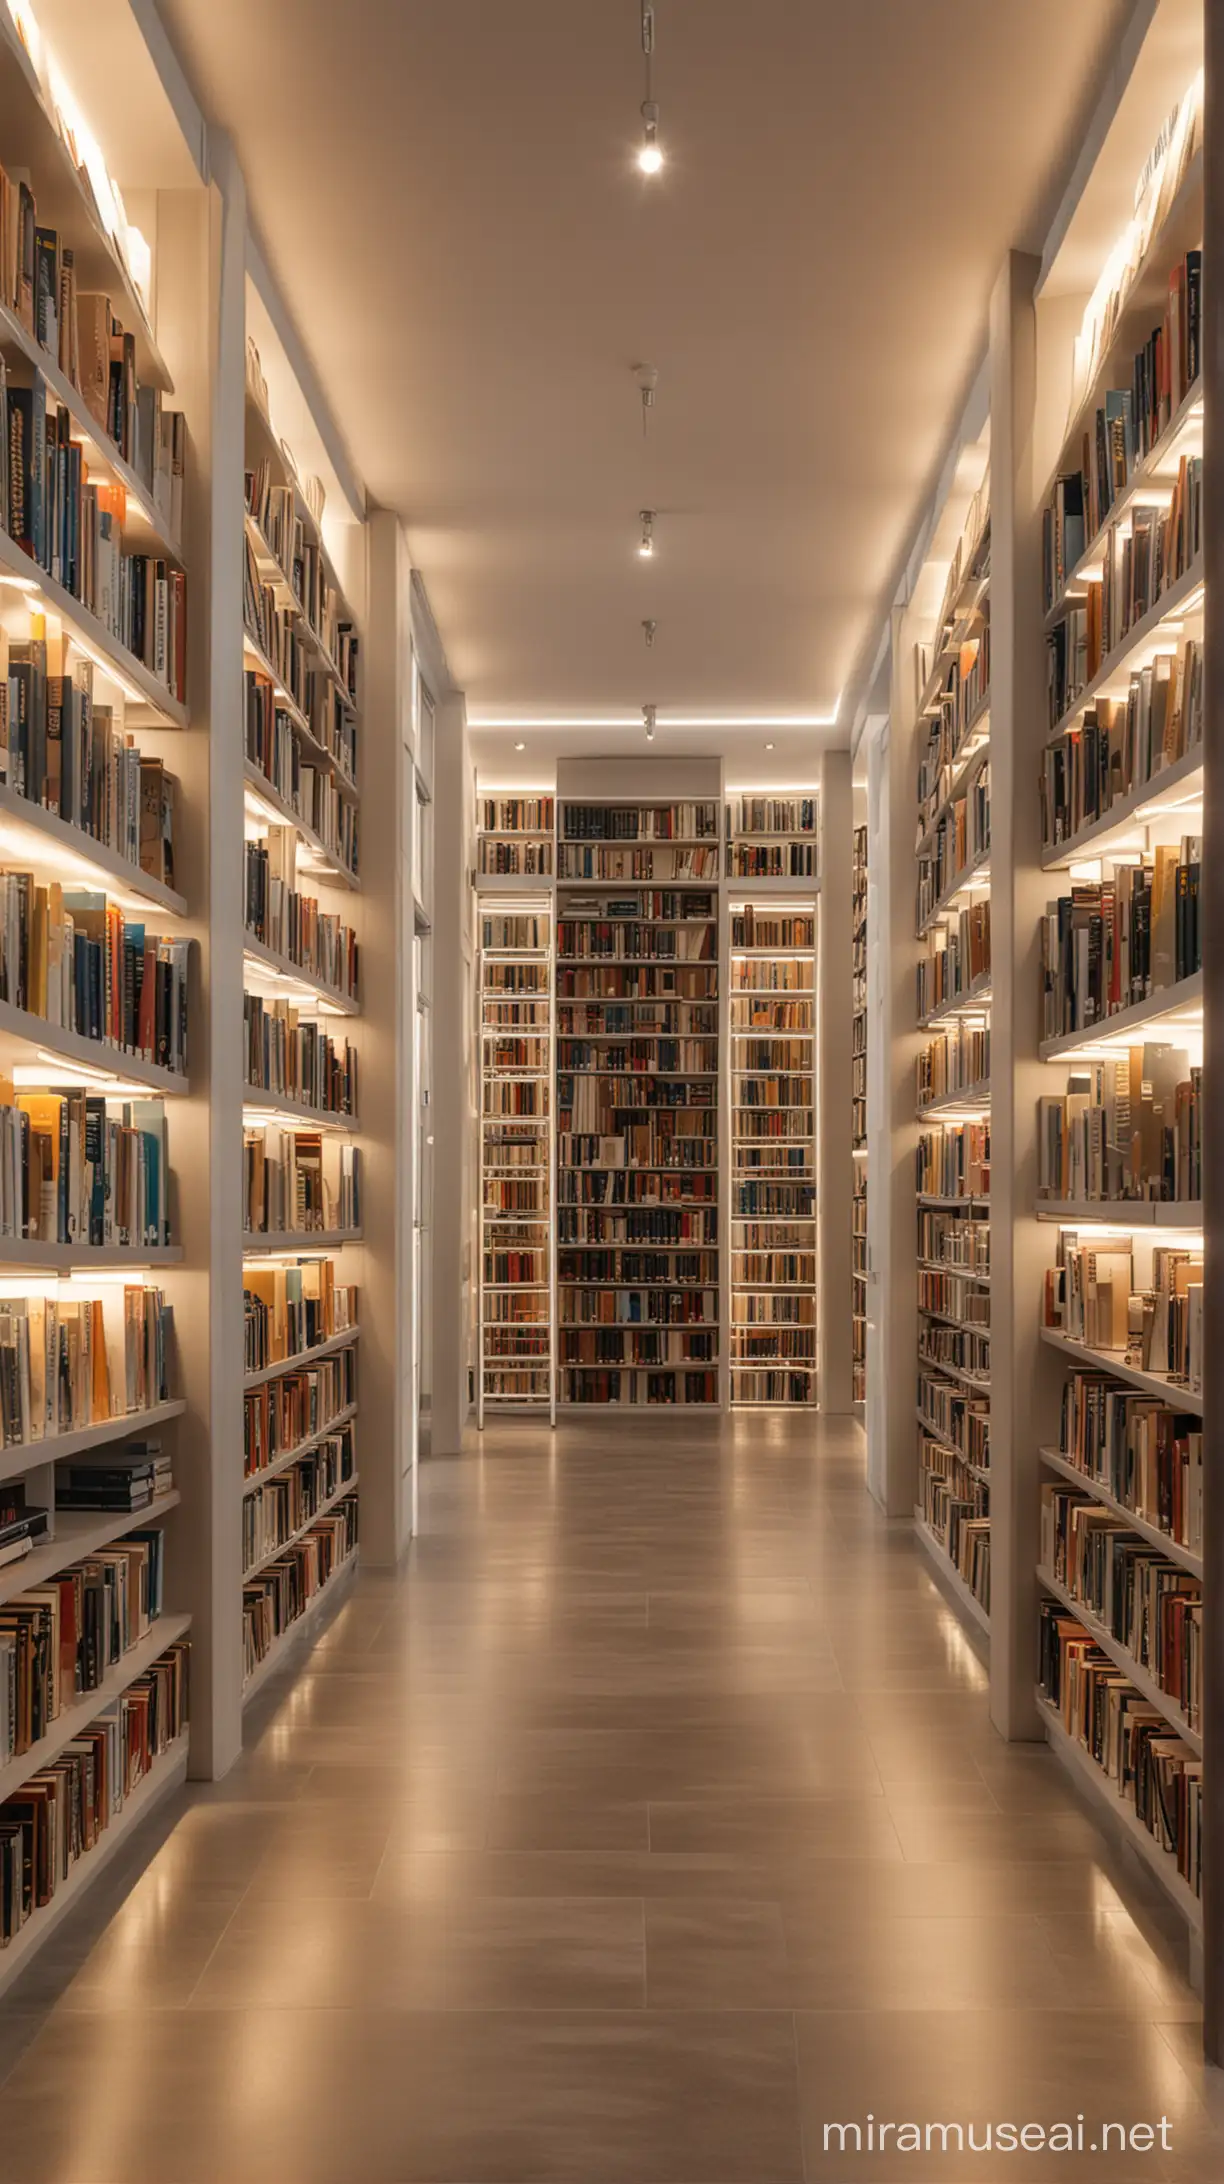 biblioteca moderna, iluminada, tonos claros, toma frontal de los pasillos y libreros